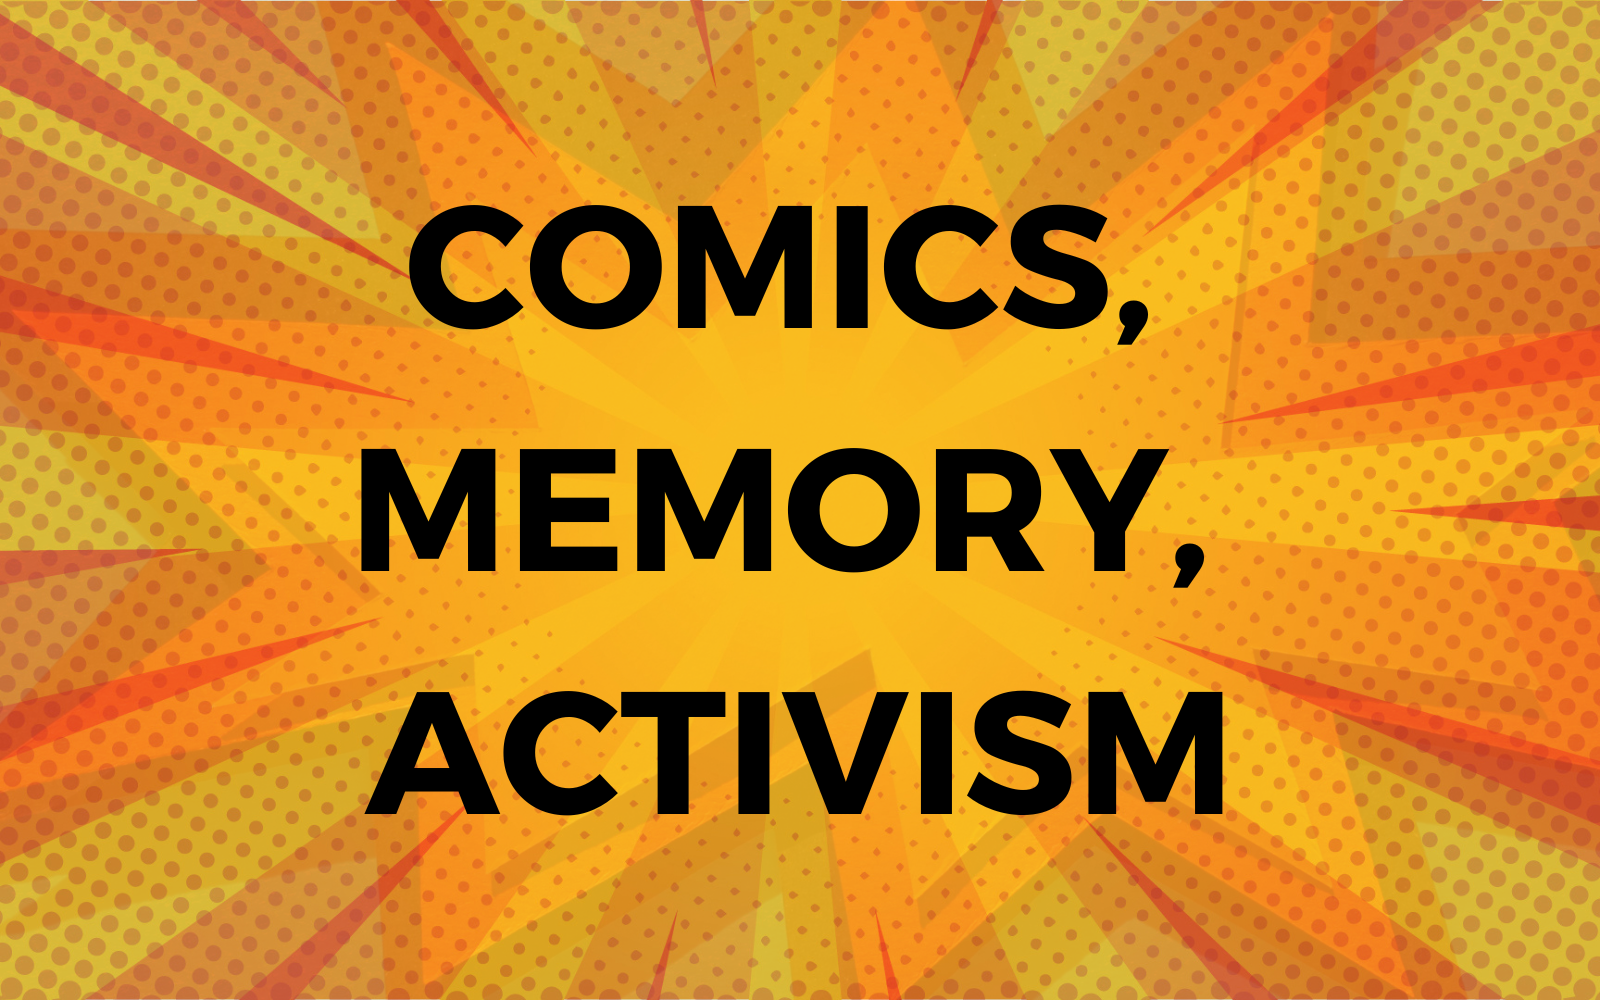 MMM Comics Memory Activism